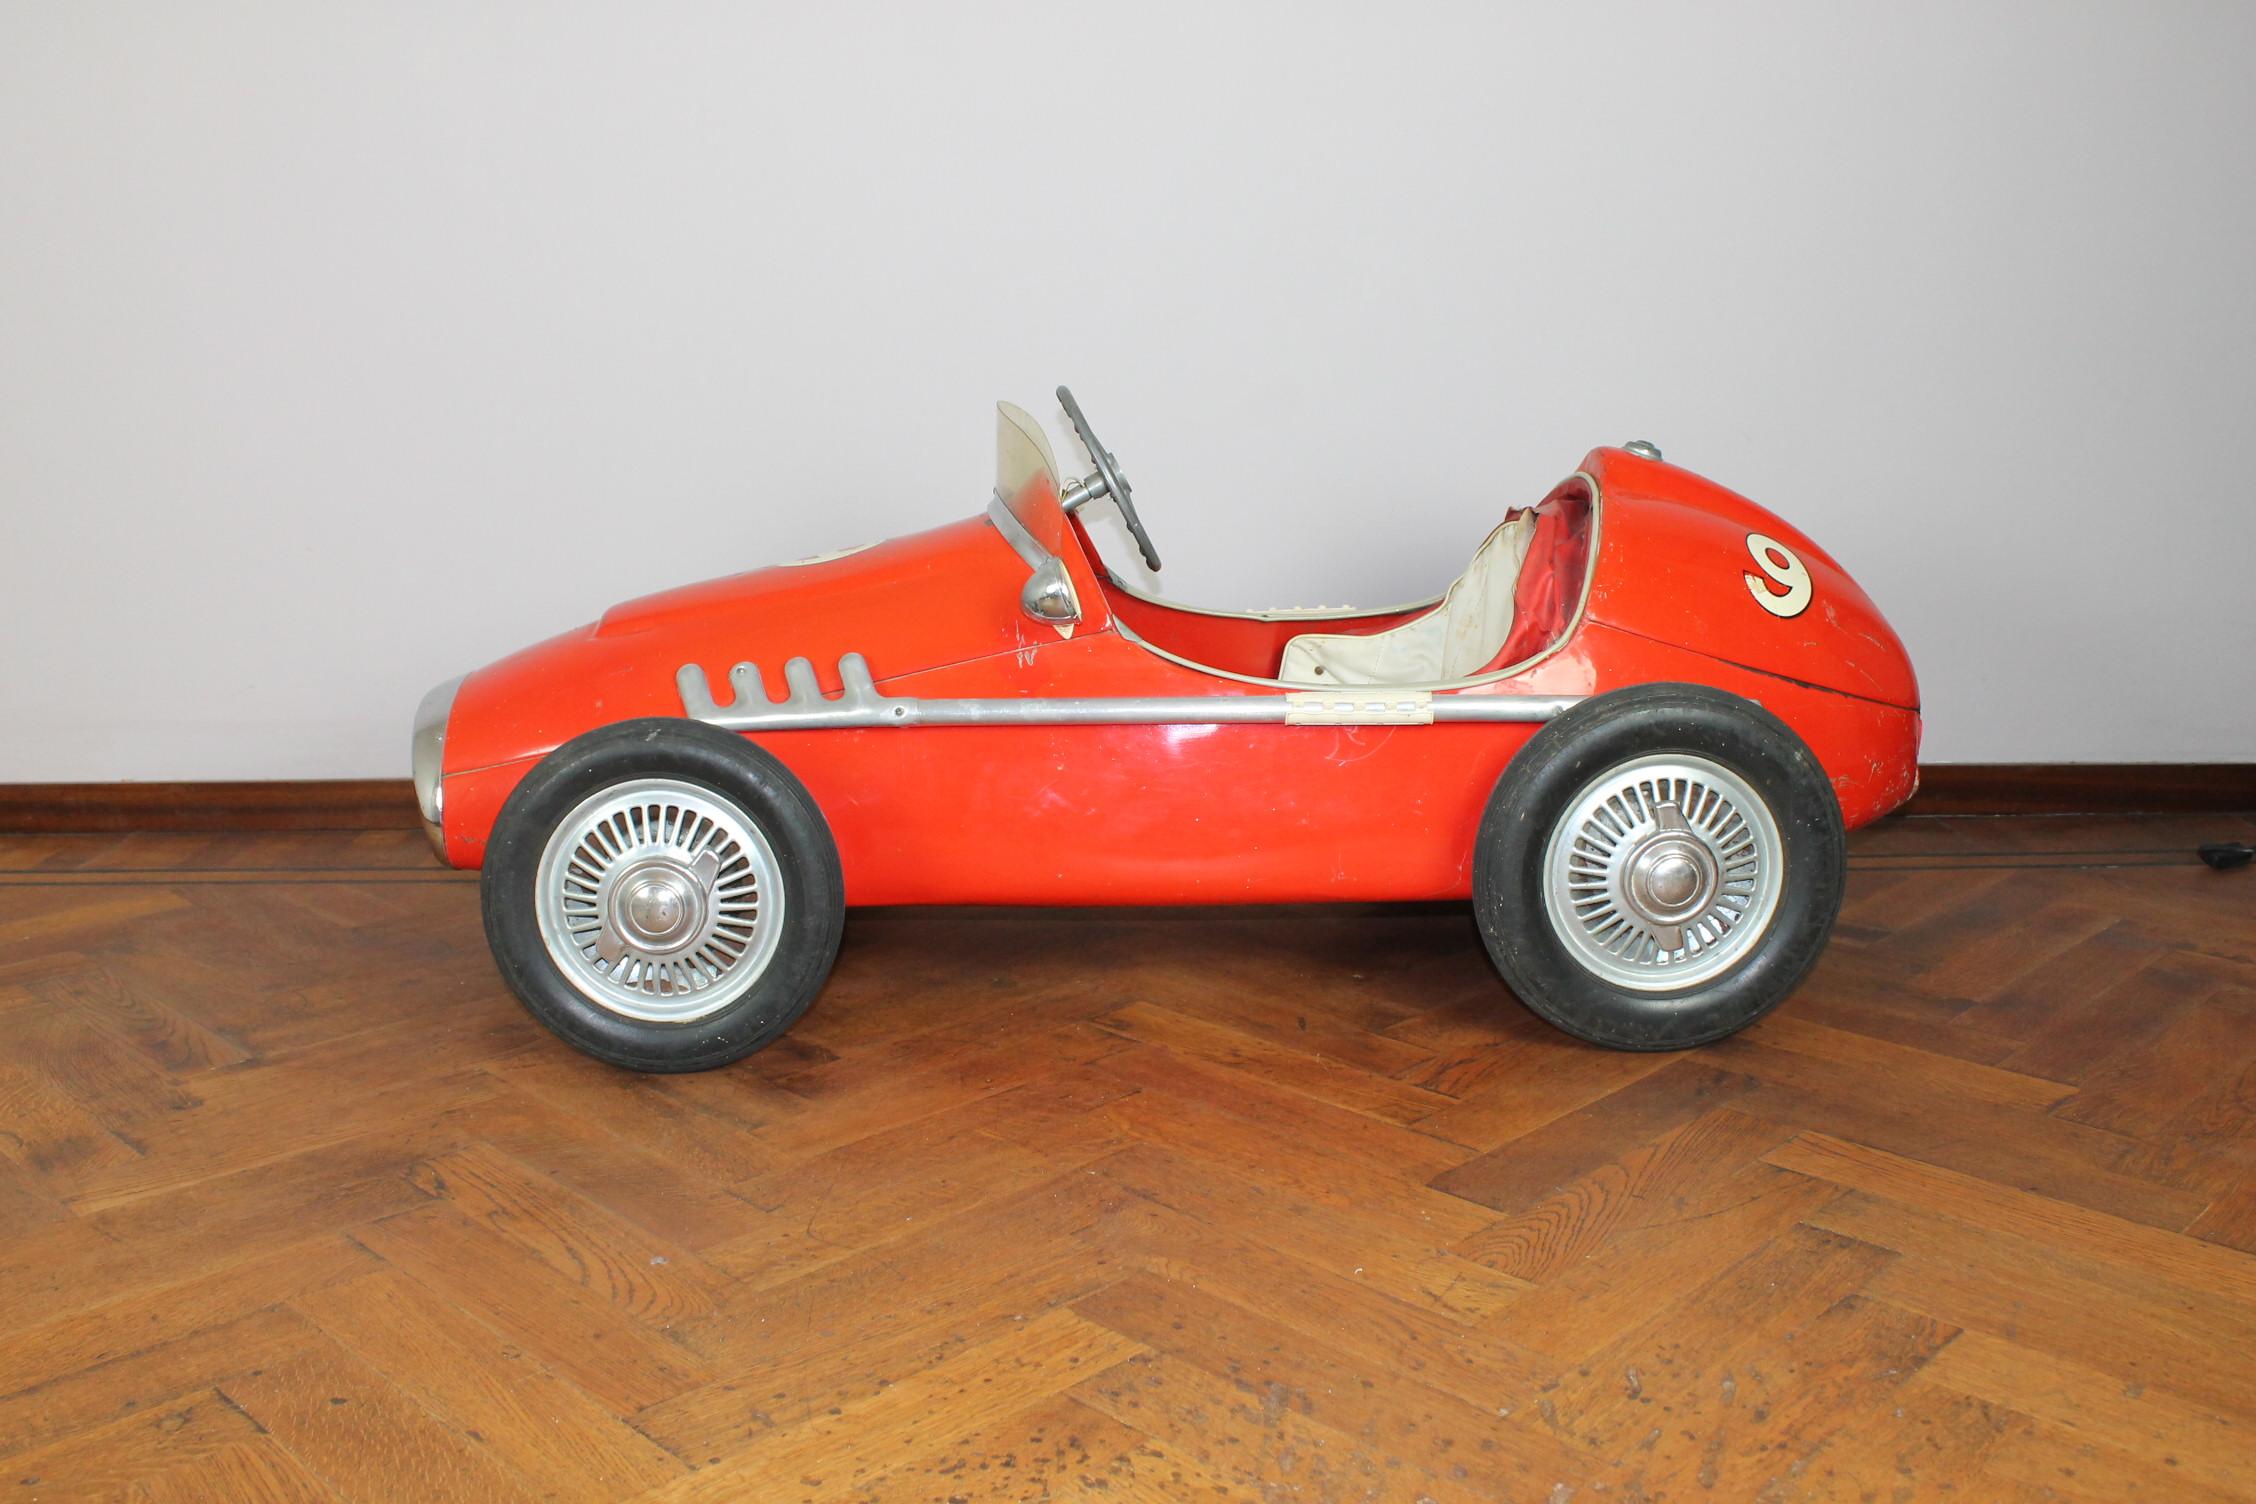 Atemberaubende große Vintage Ferrari Nummer 9 Pedal Auto. 
Dieses Spielzeugauto für Kinder wurde in den 1950er Jahren von Corrado & Remondini in Italien hergestellt.
Sie nannten ihn den Indianapolis von C & R, da er dem Giordani Racer ähnelte. 